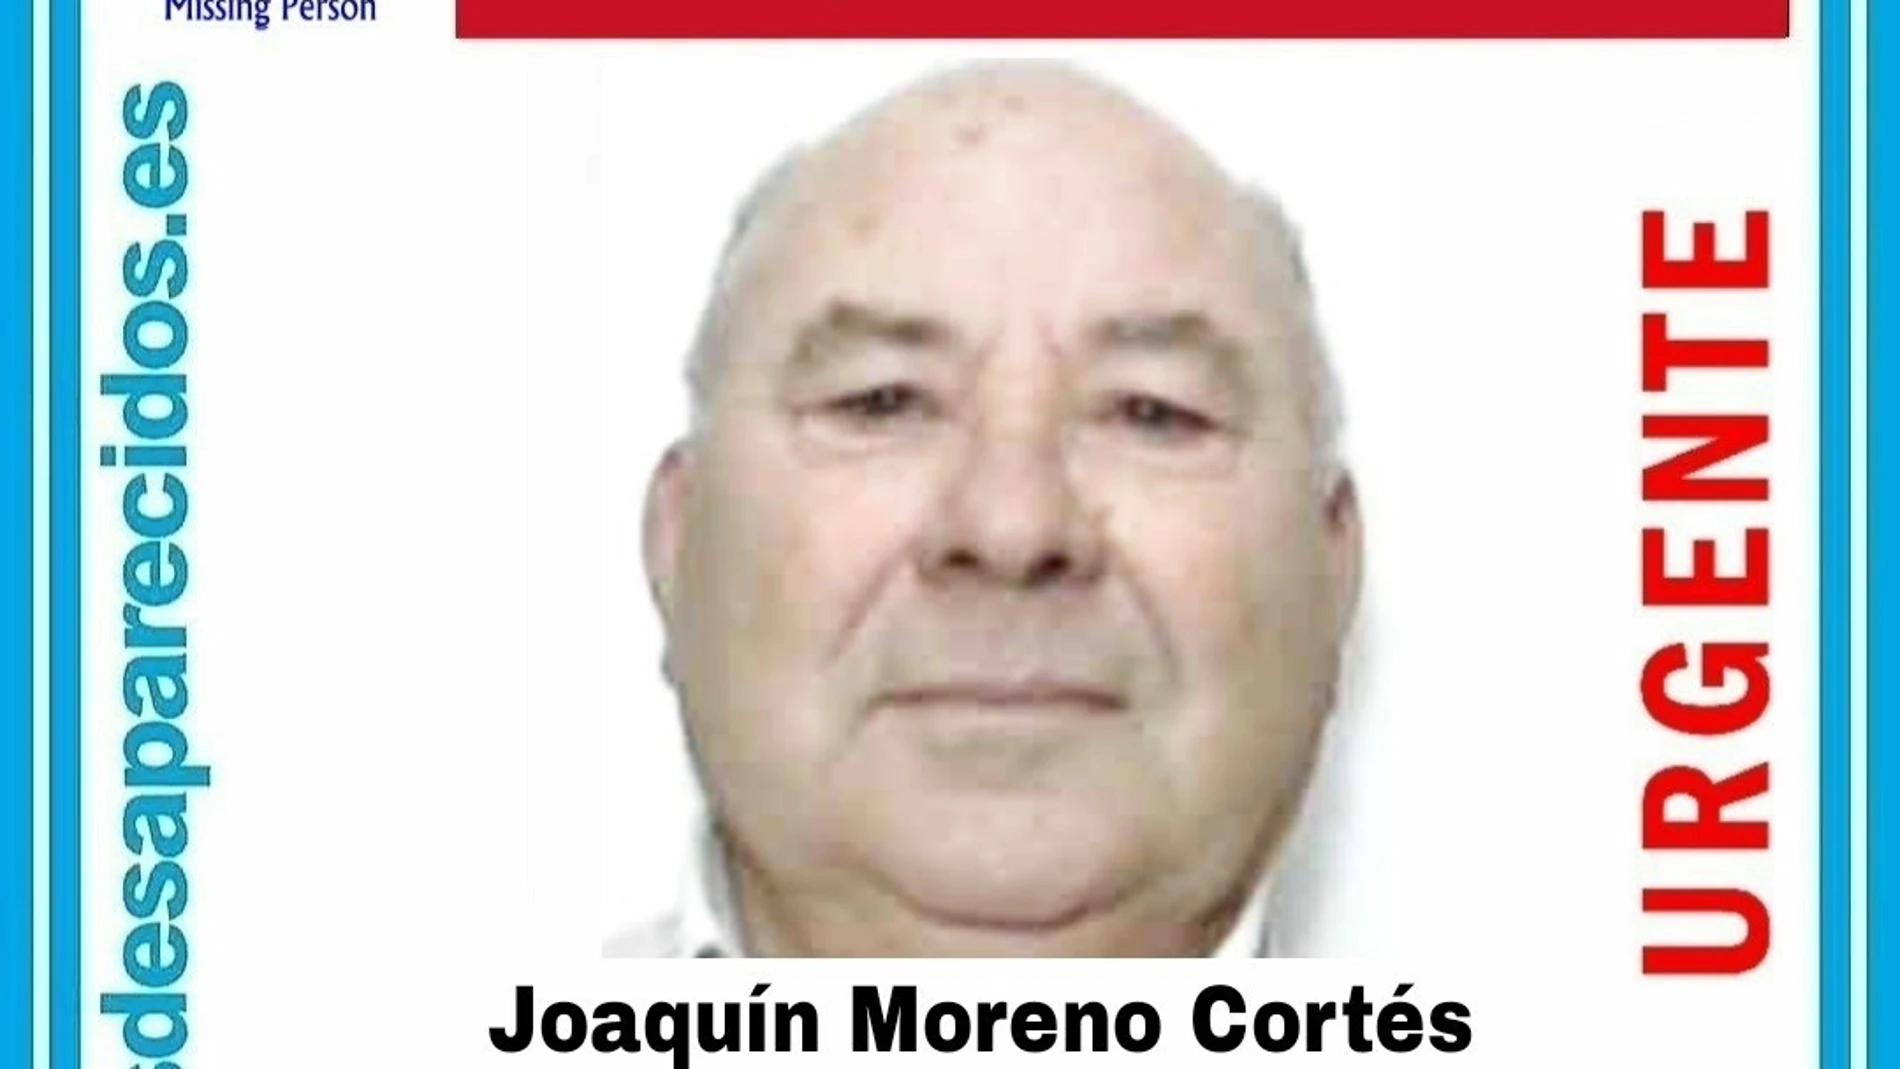 Buscan a un hombre de 73 años desaparecido desde hace casi dos semanas en Las Tres VillasSOS DESAPARECIDOS05/02/2022